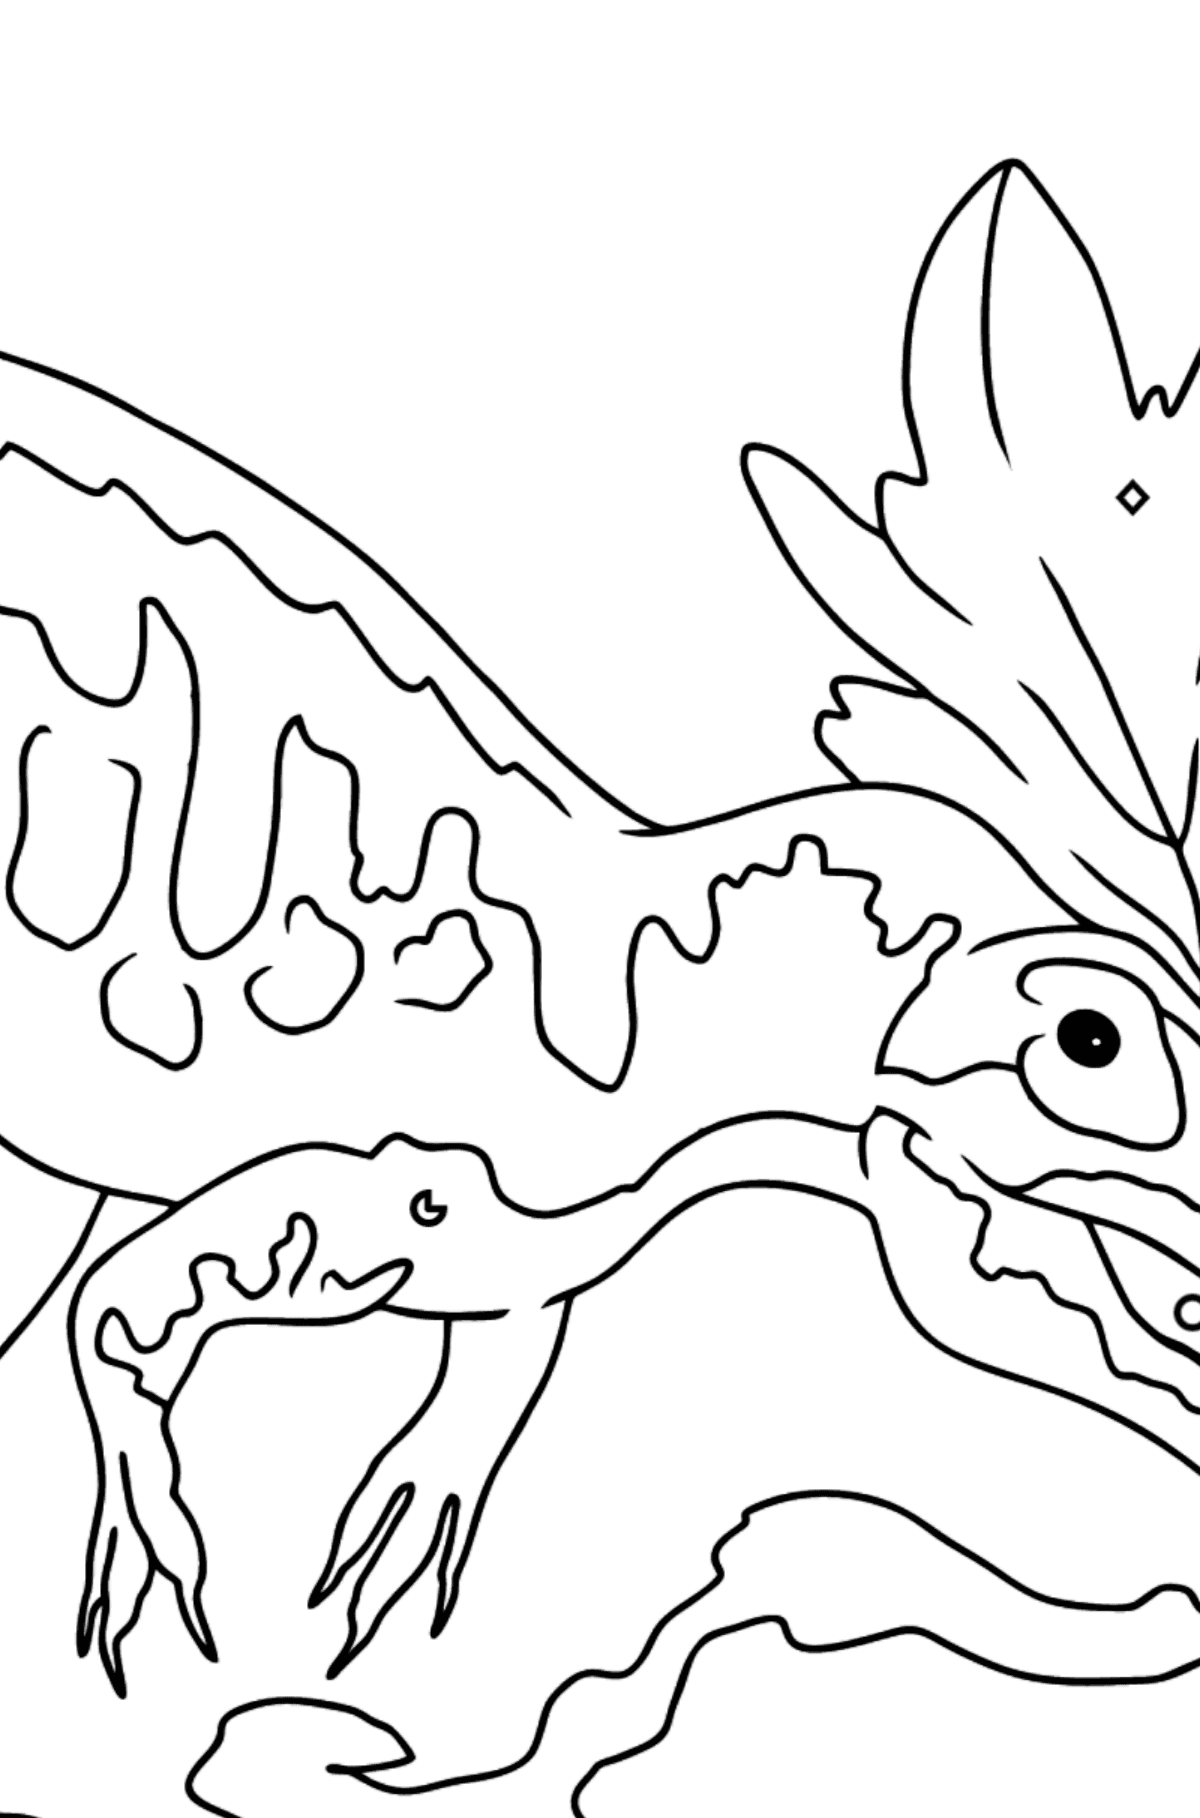 Tegning til fargelegging allosaurus (enkelt) - Fargelegge etter geometriske former for barn